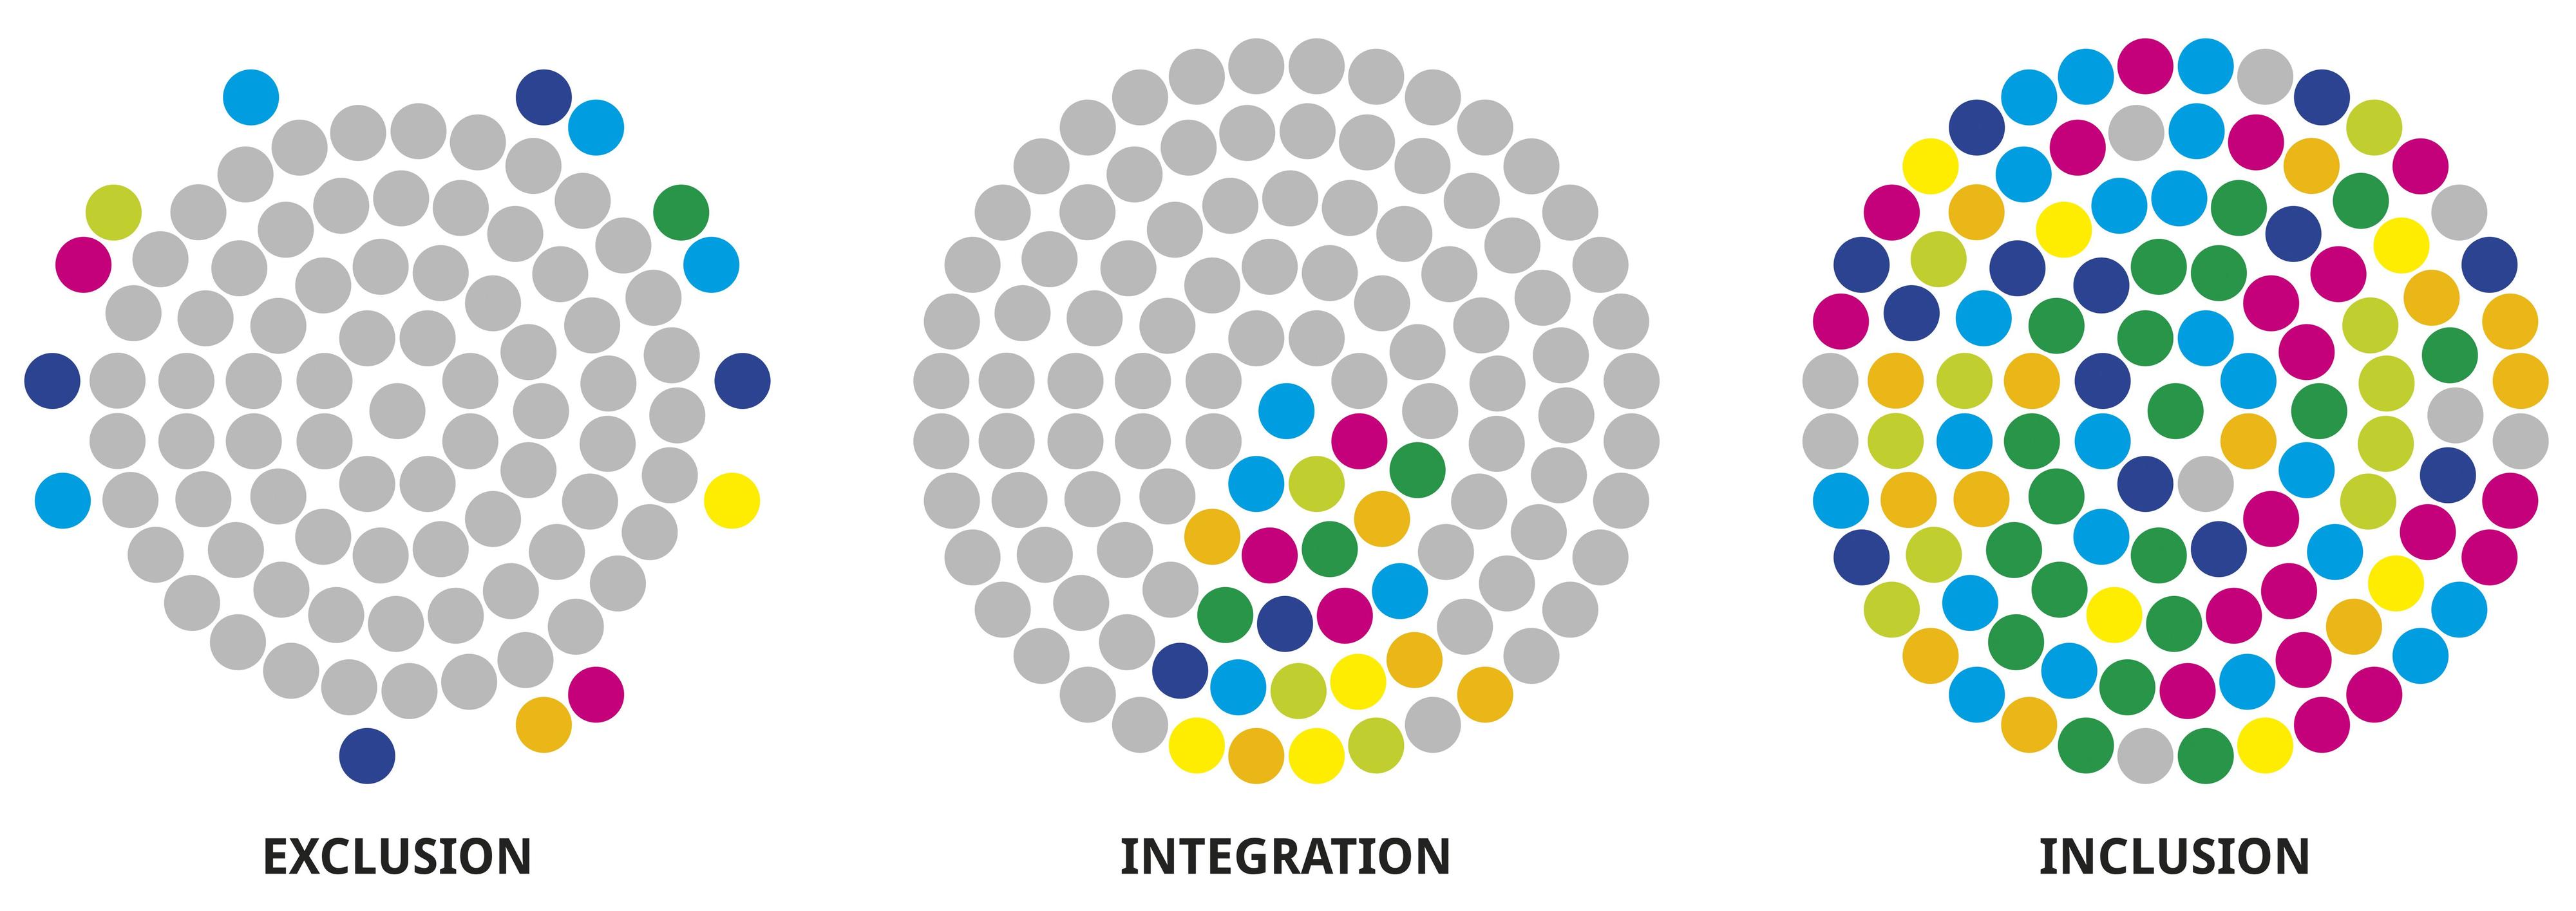 Grafik, die anhand von Kreiselementen zeigt, was Exklusion, Integration und Inkusion innerhalb von Gruppen bedeuten.